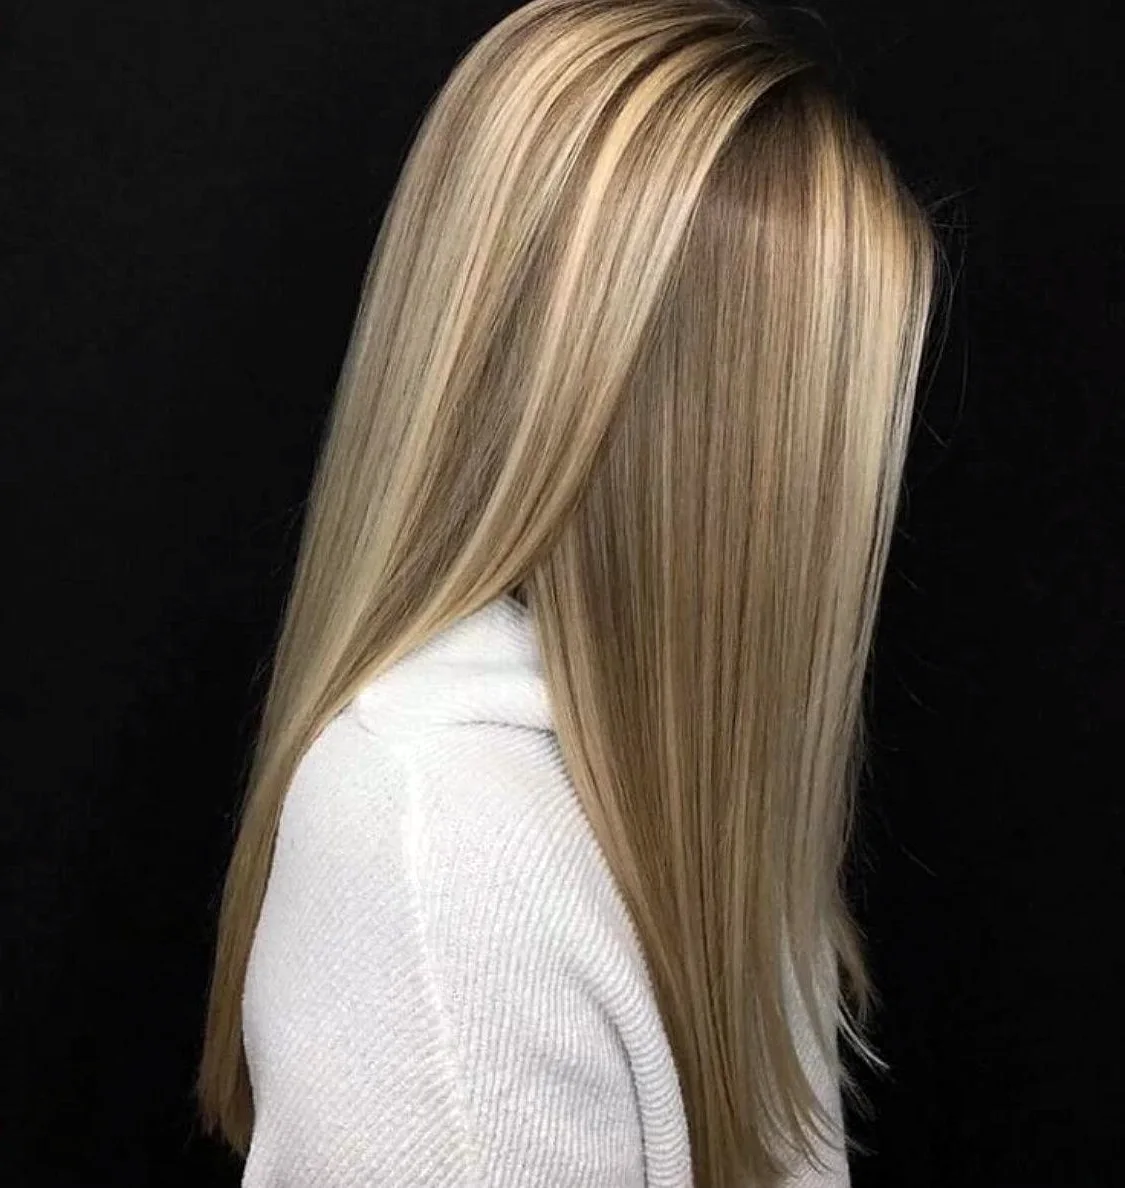 калифорнийский блонд фото на русые волосы